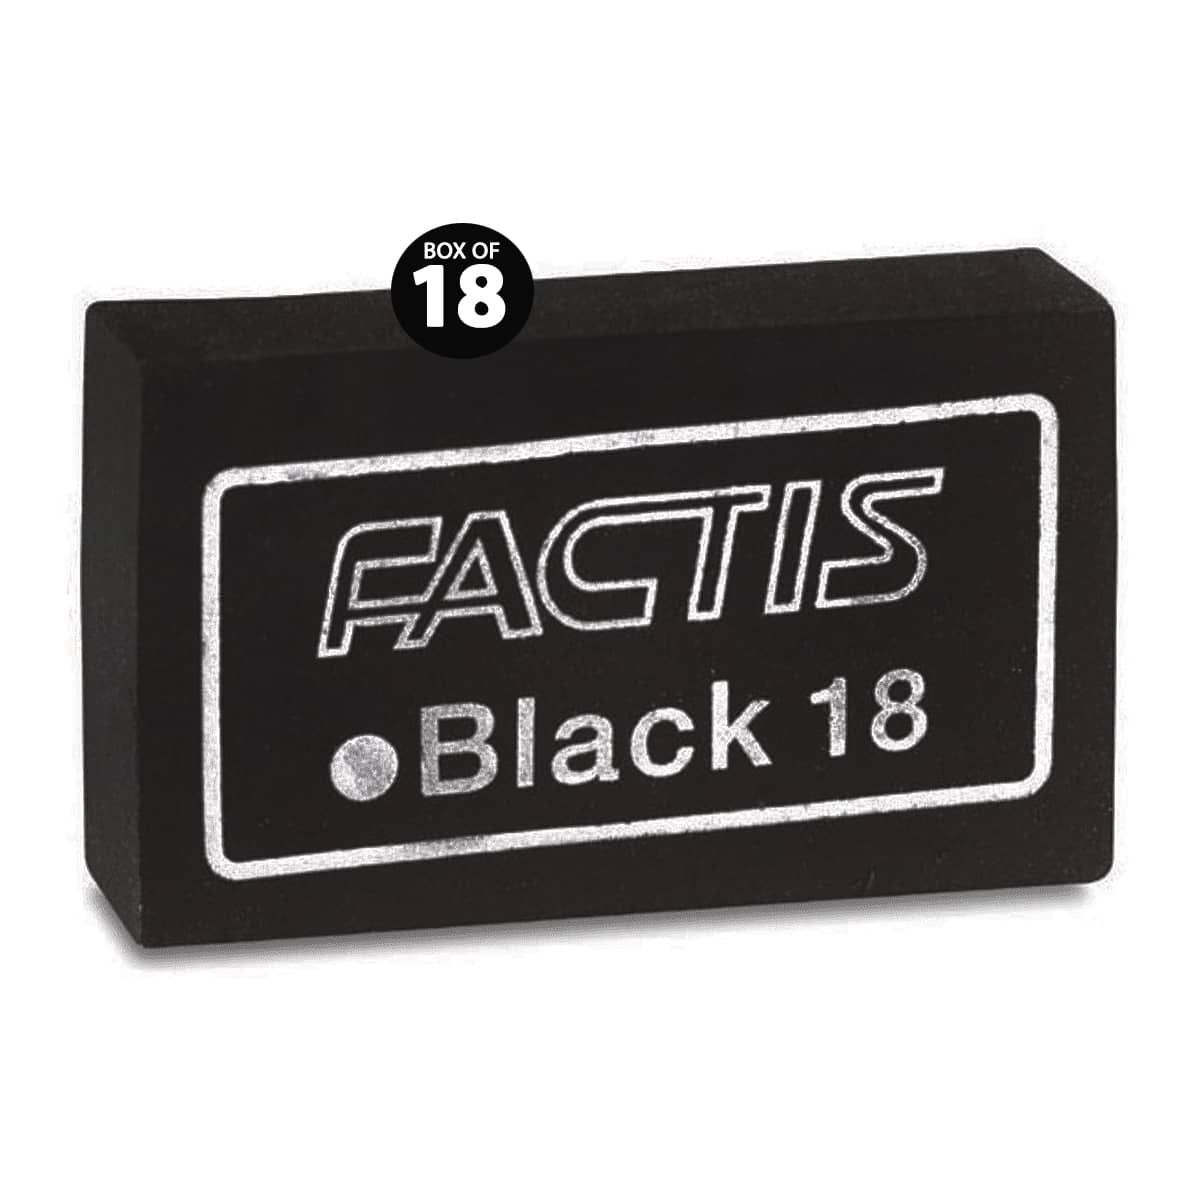 Factis Magic Black 18 Eraser - Box of 18